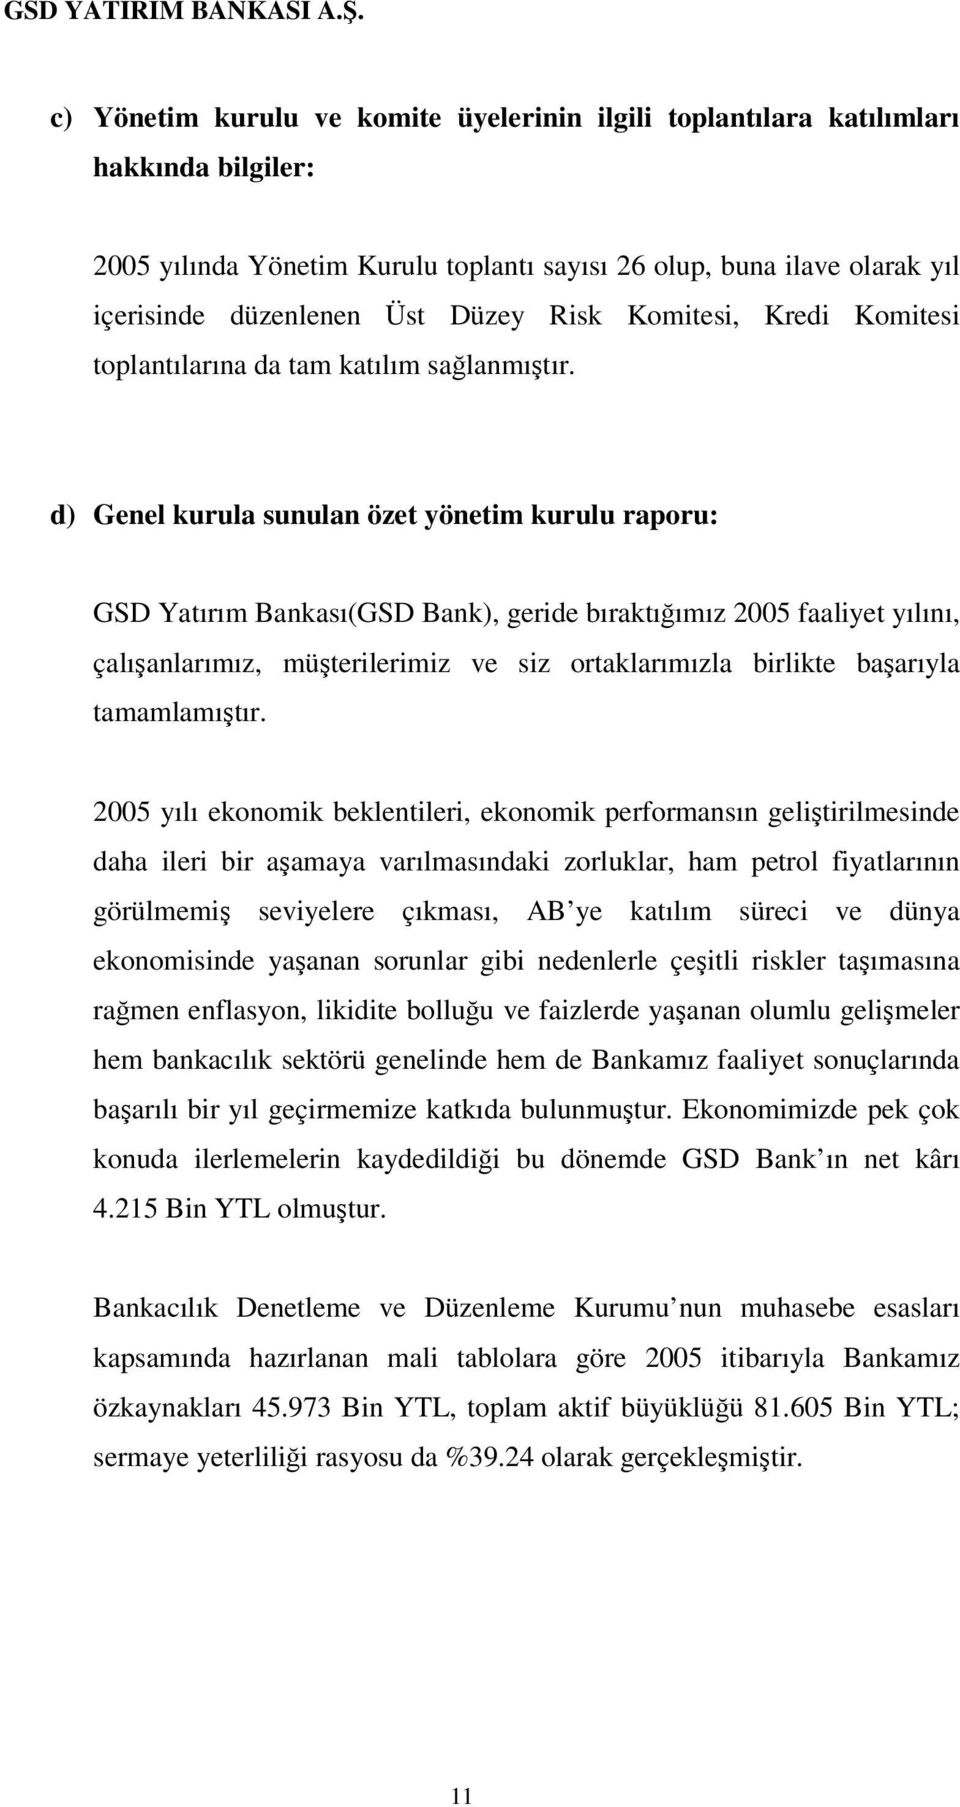 d) Genel kurula sunulan özet yönetim kurulu raporu: GSD Yatırım Bankası(GSD Bank), geride bıraktıımız 2005 faaliyet yılını, çalıanlarımız, müterilerimiz ve siz ortaklarımızla birlikte baarıyla